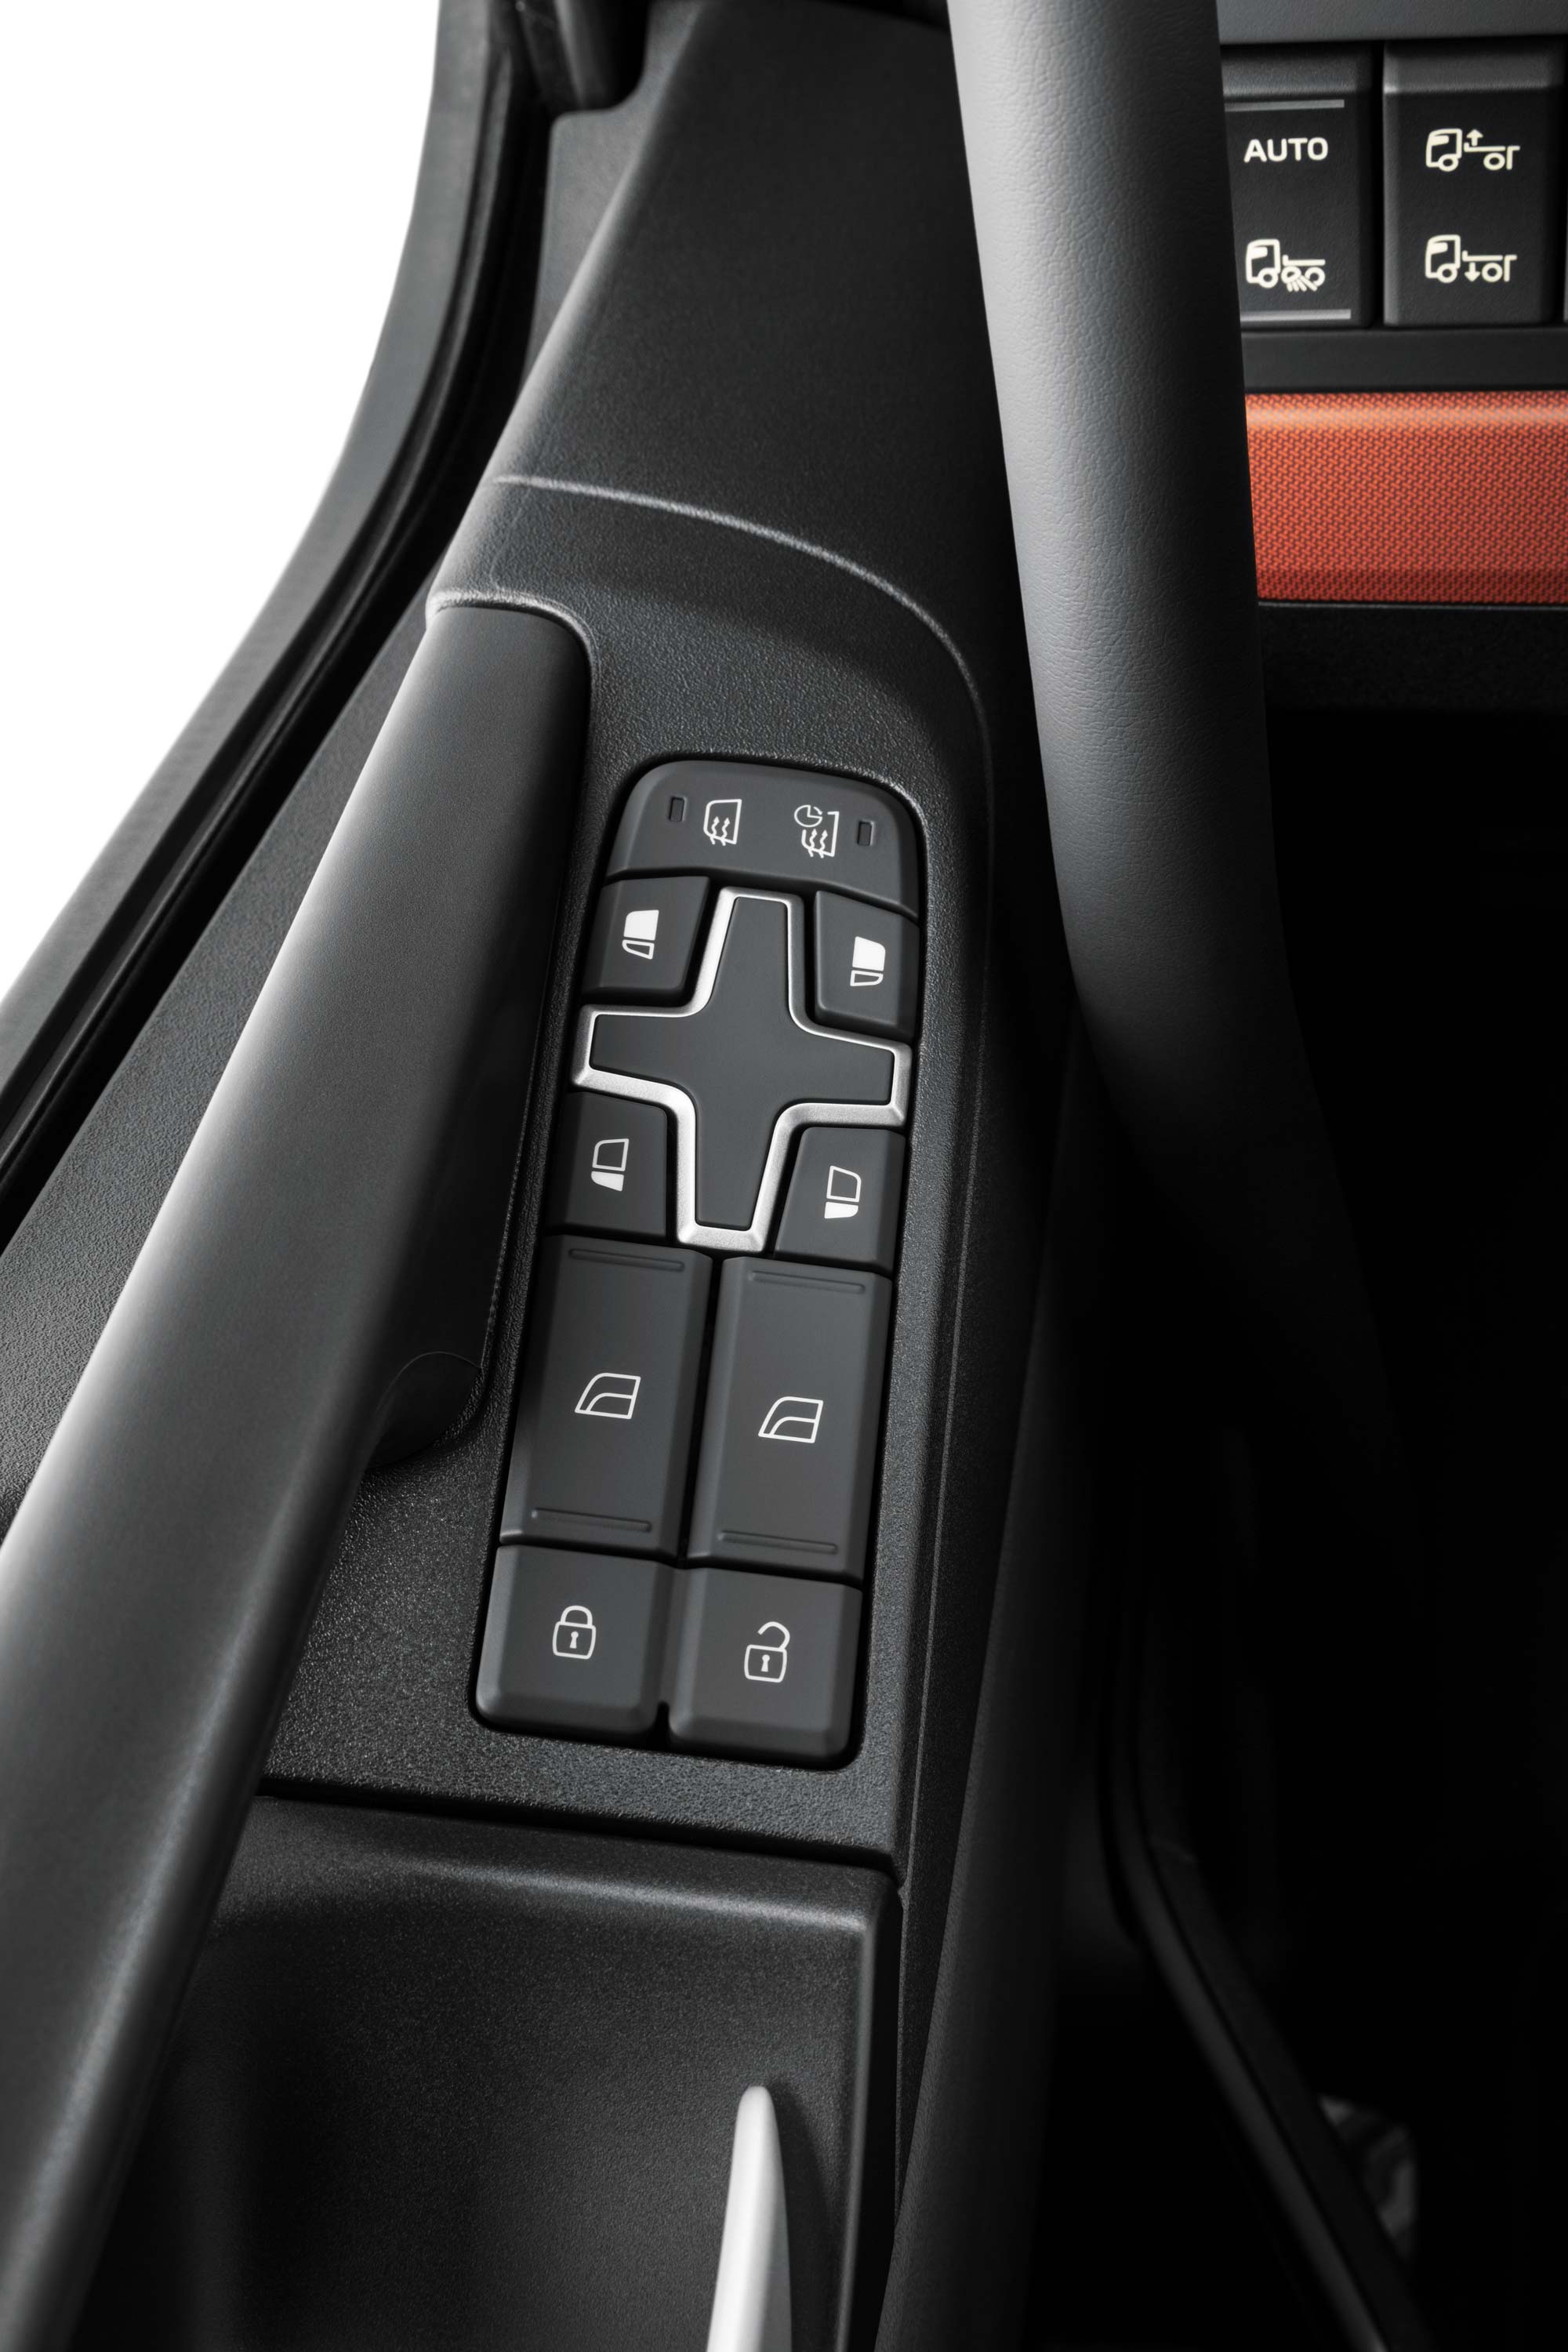 Контроли вградени во внатрешноста на Volvo FH16 за да го олеснат пристапот.